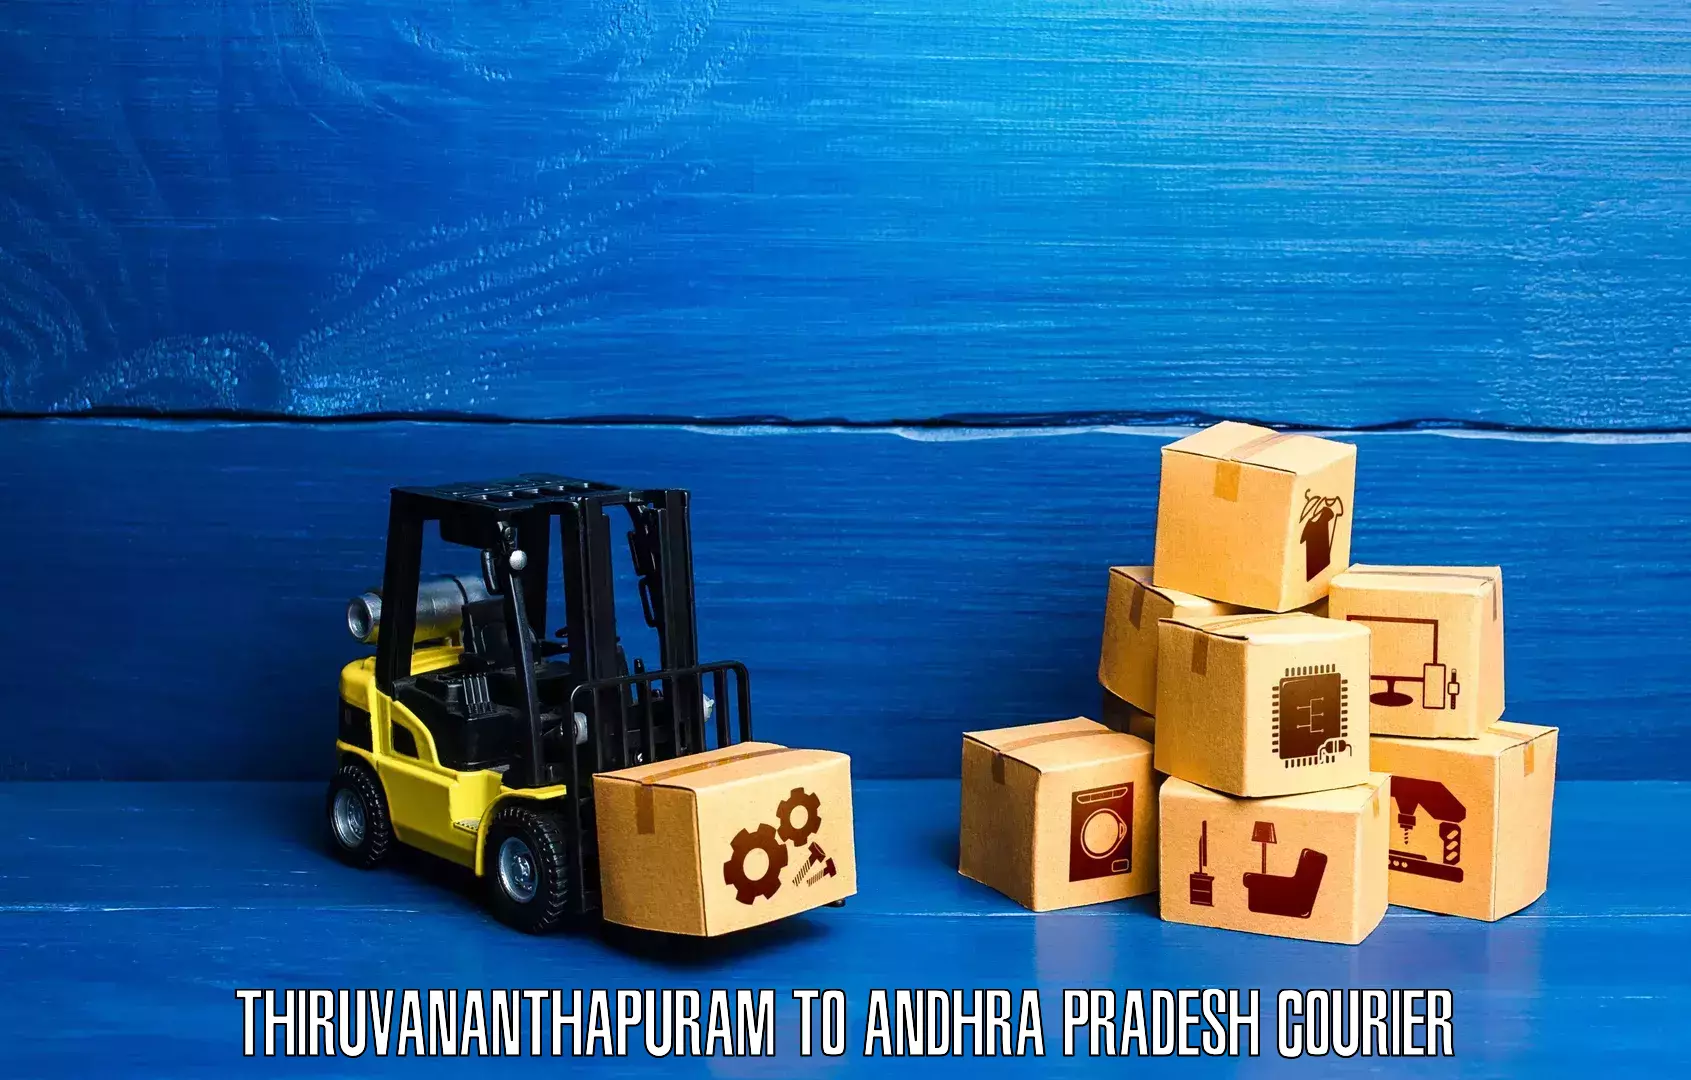 Express courier capabilities Thiruvananthapuram to Andhra Pradesh